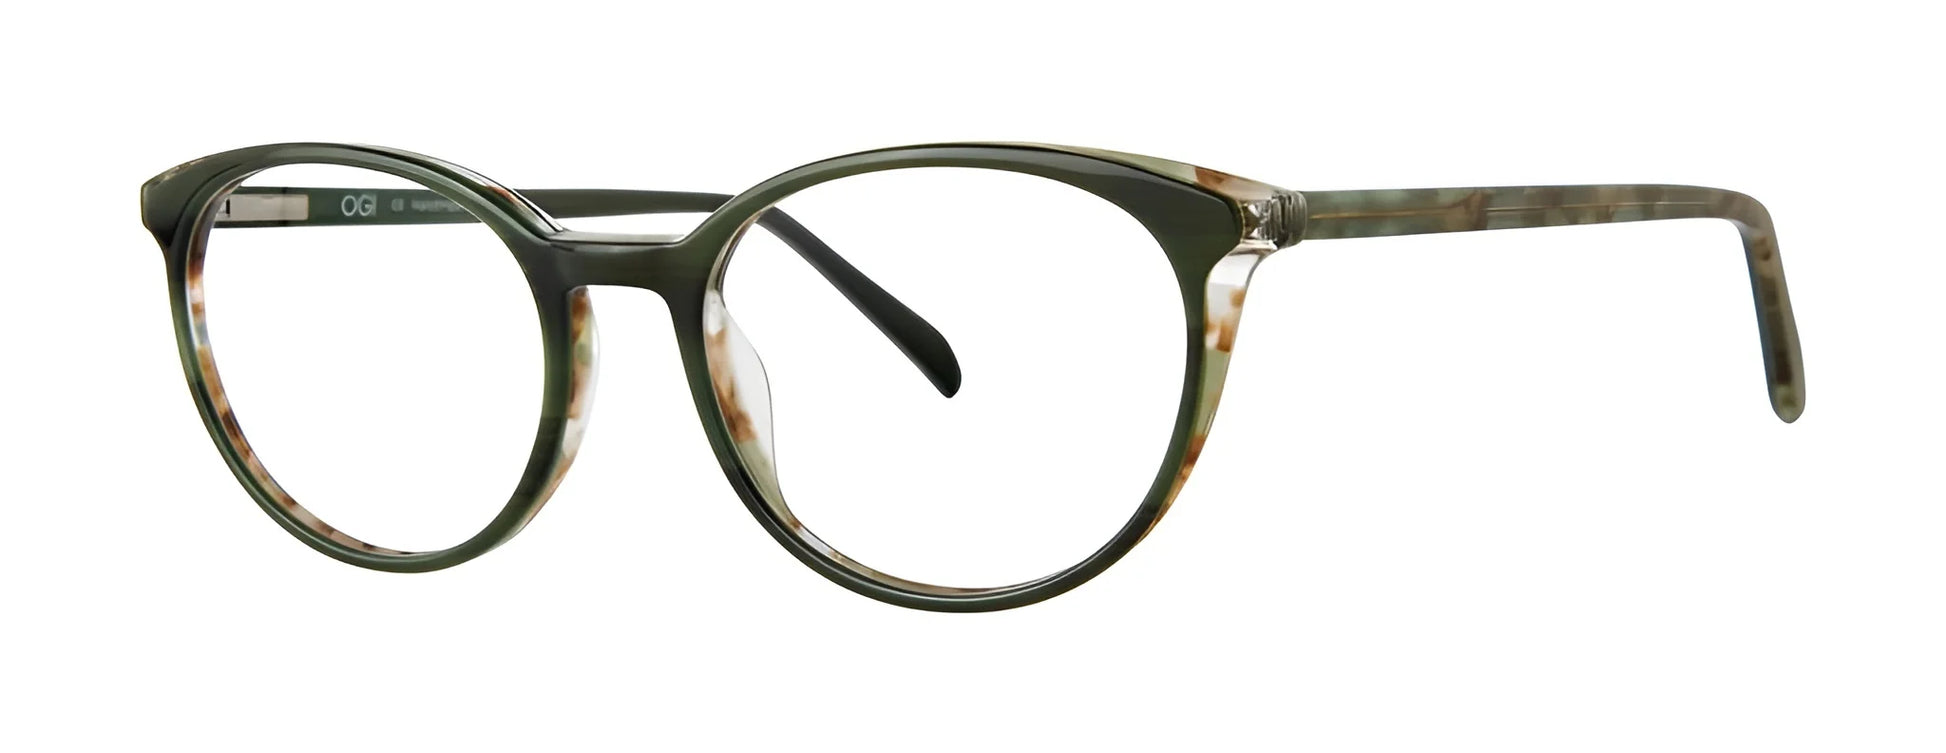 OGI Kids TILT-A-WHIRL Eyeglasses Clover Crunch Tortoise